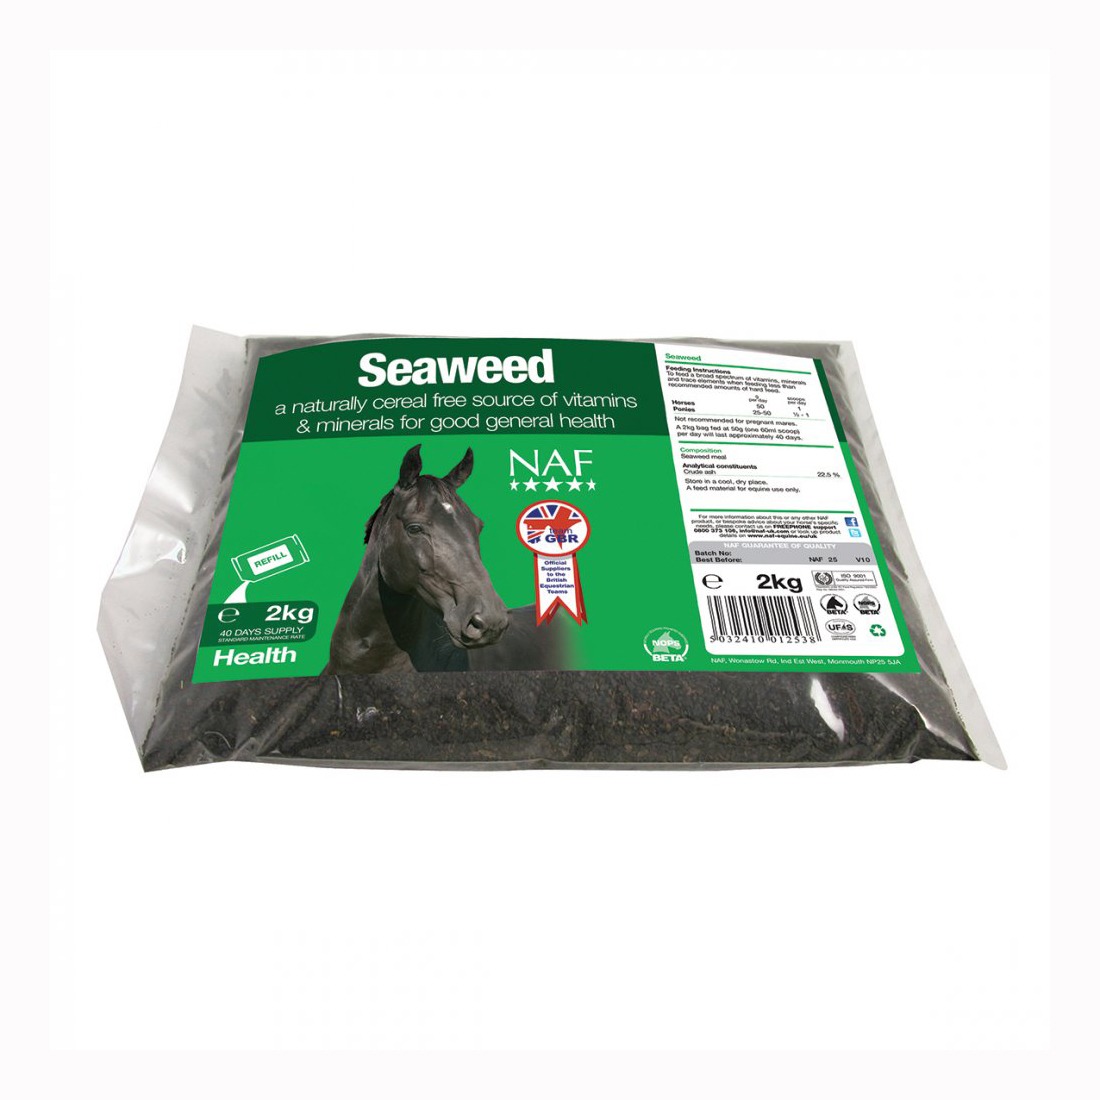 NAF seaweed